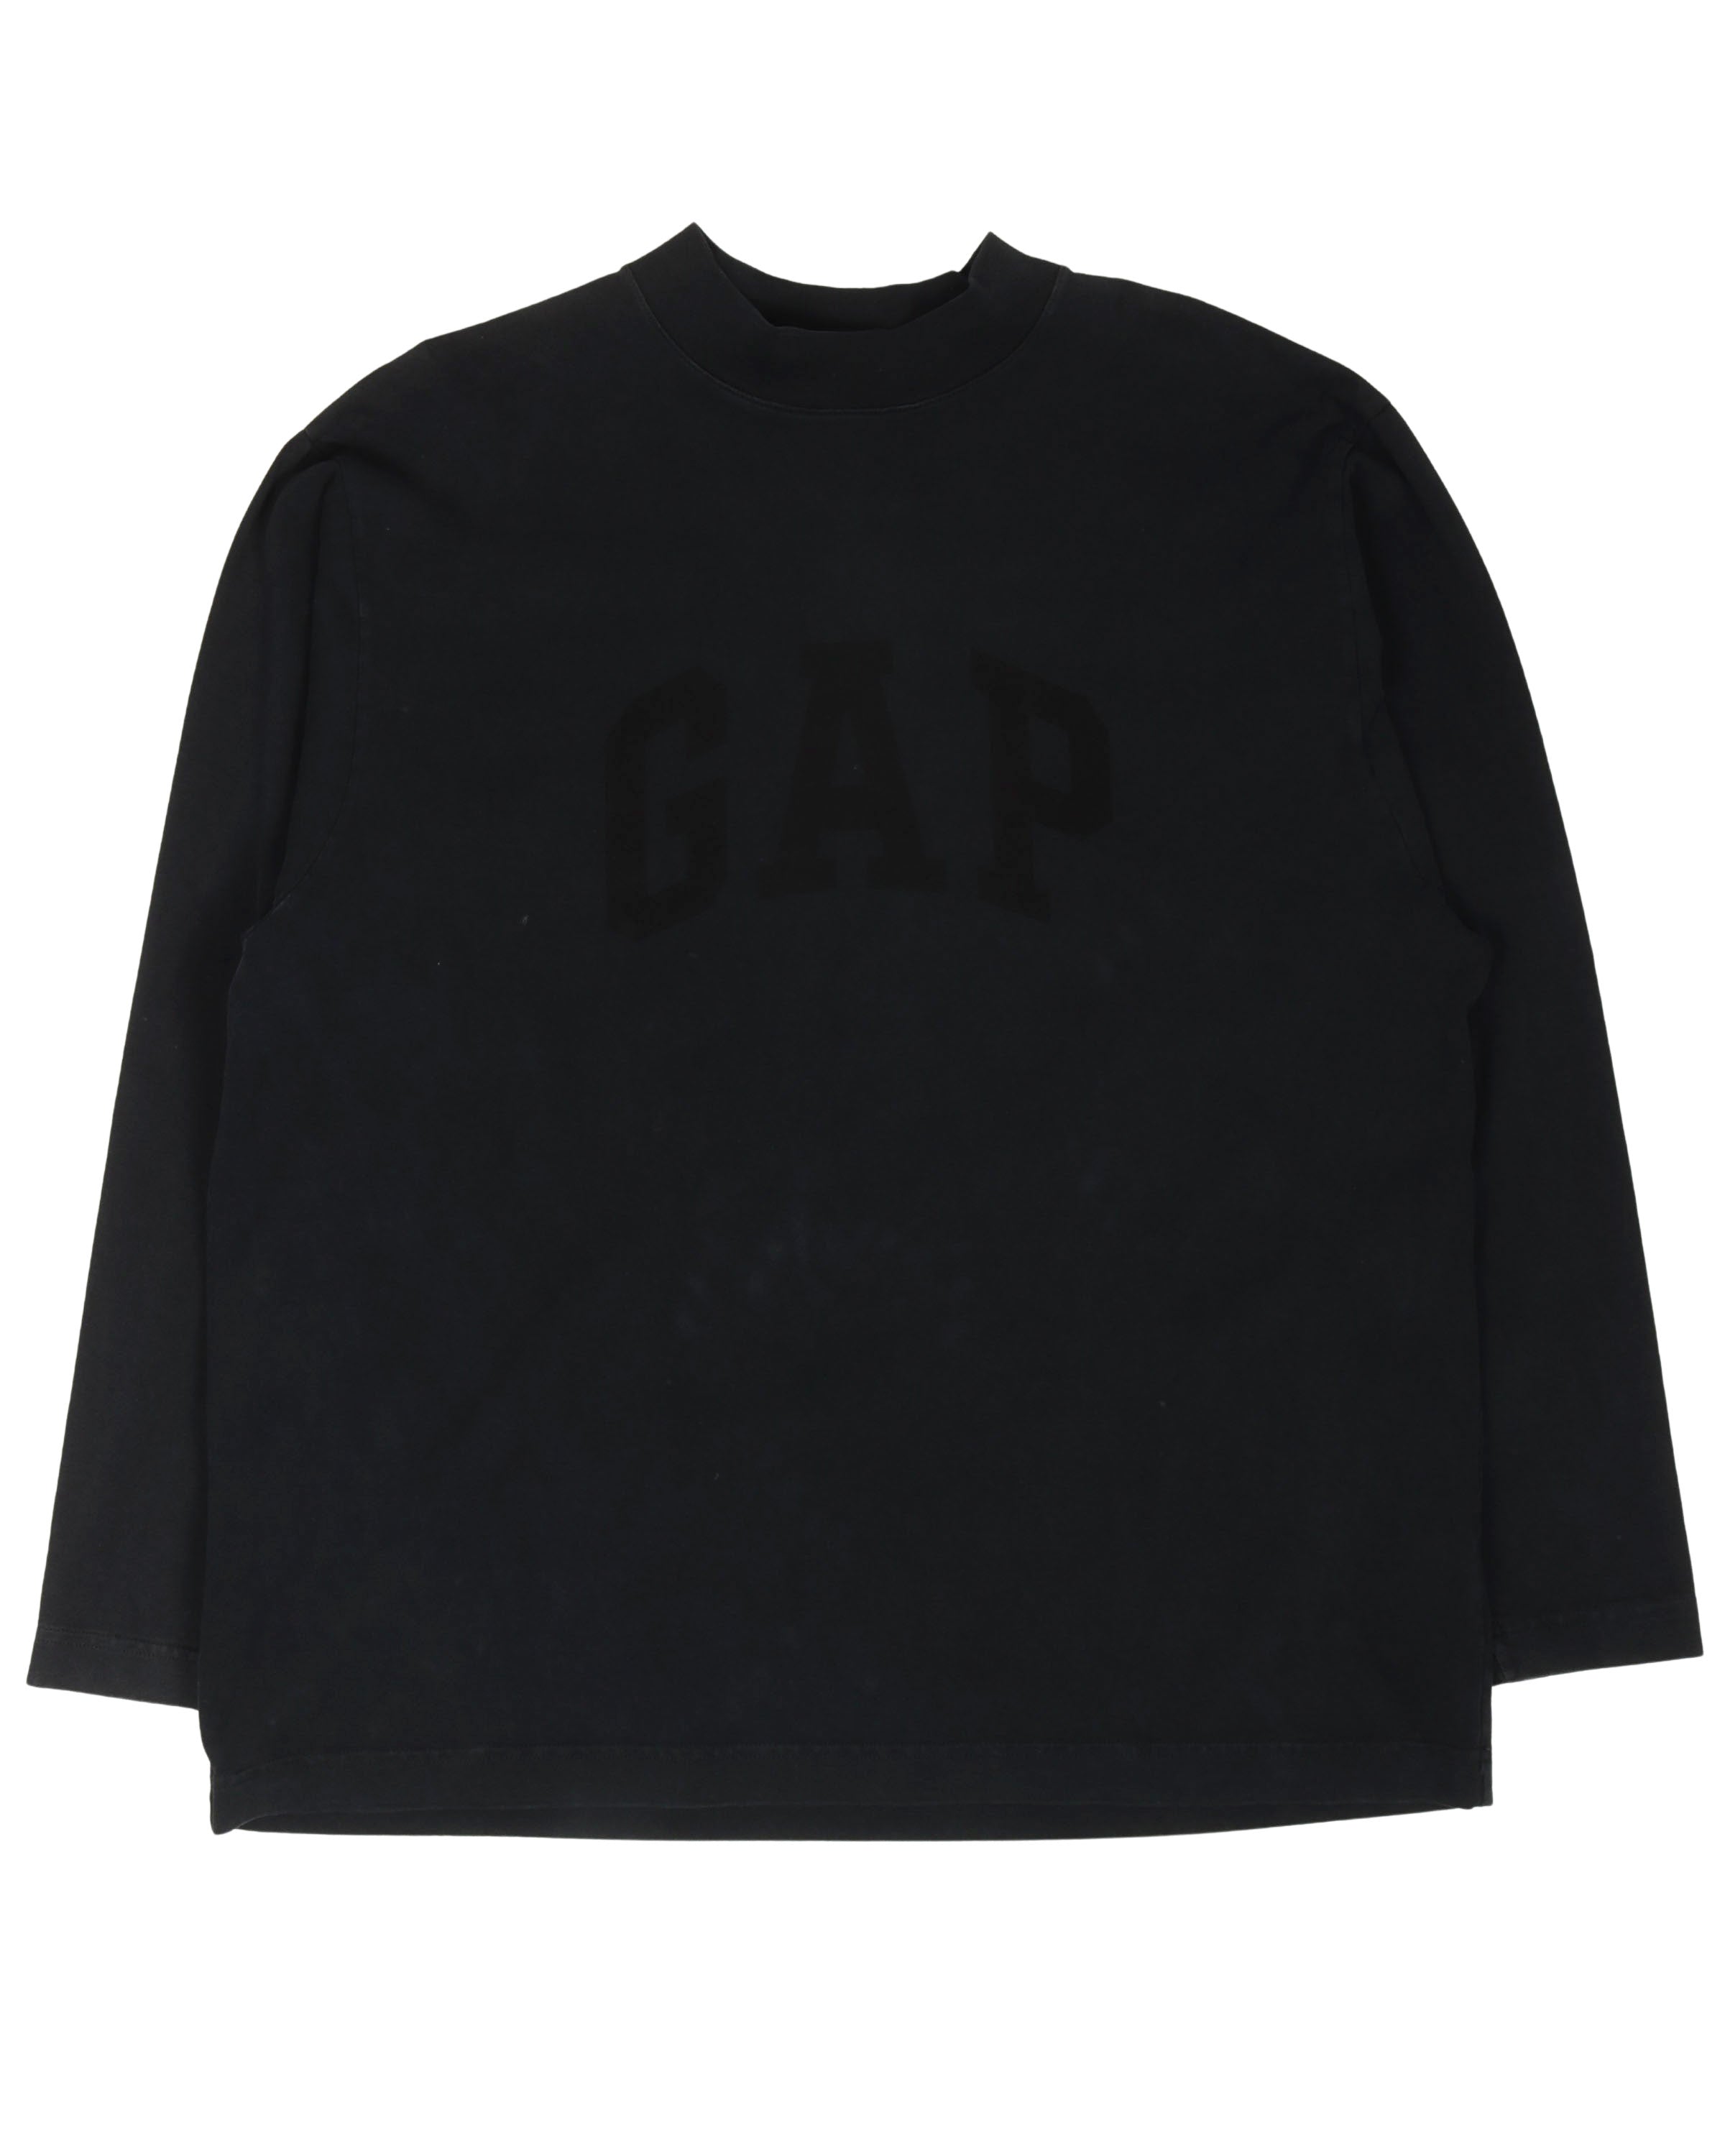 Gap Long Sleeve T-Shirt